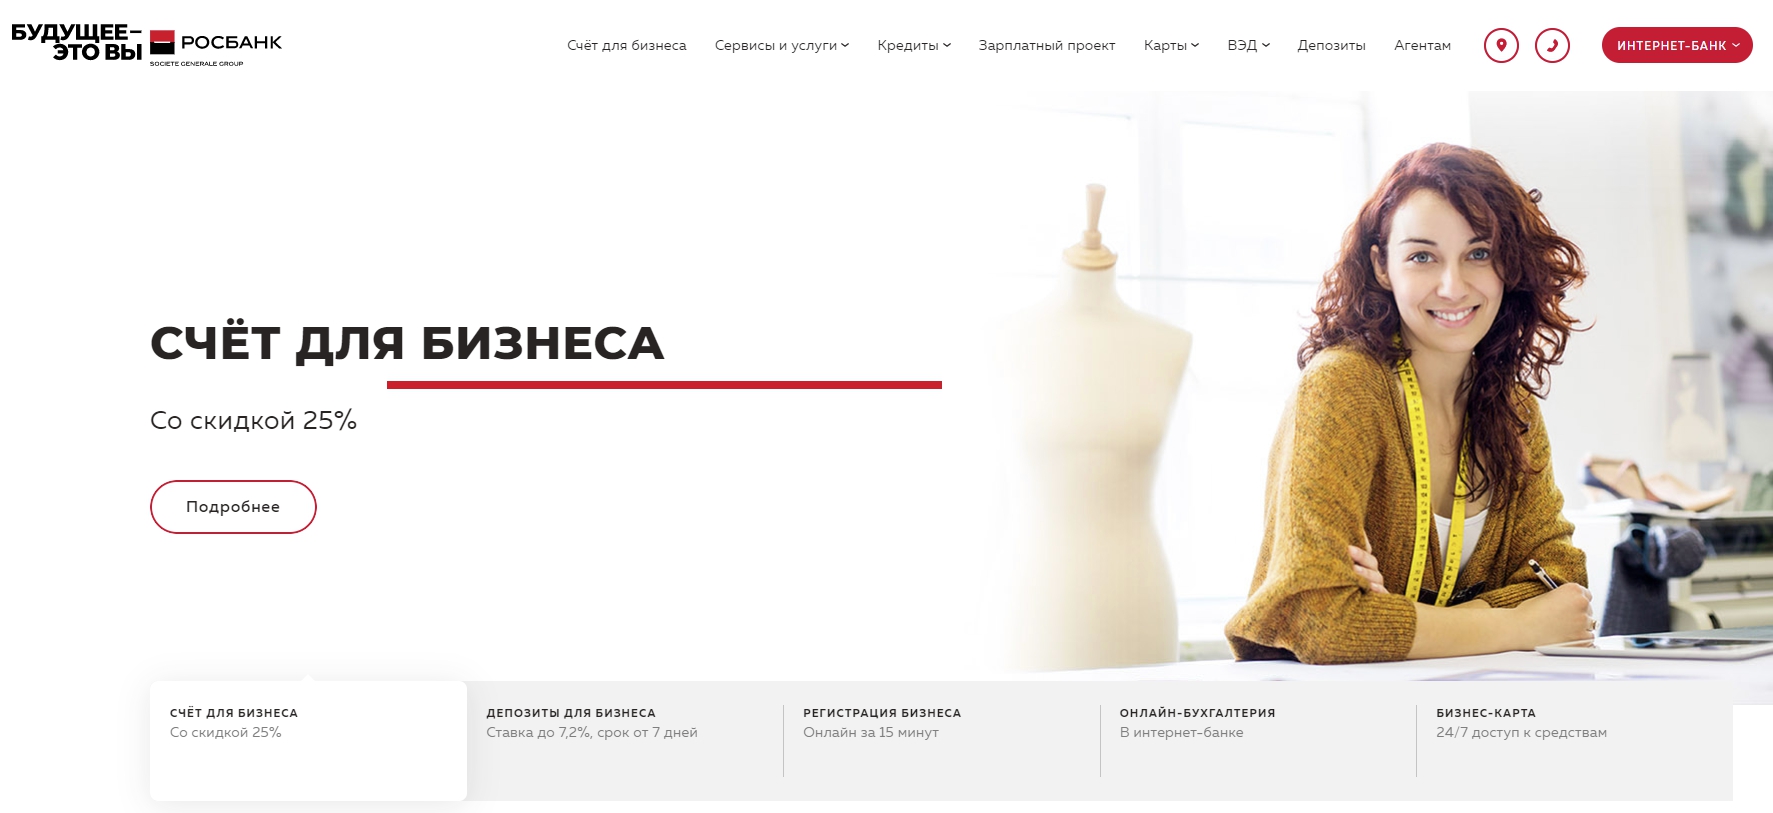 Сайт росбанка красноярск